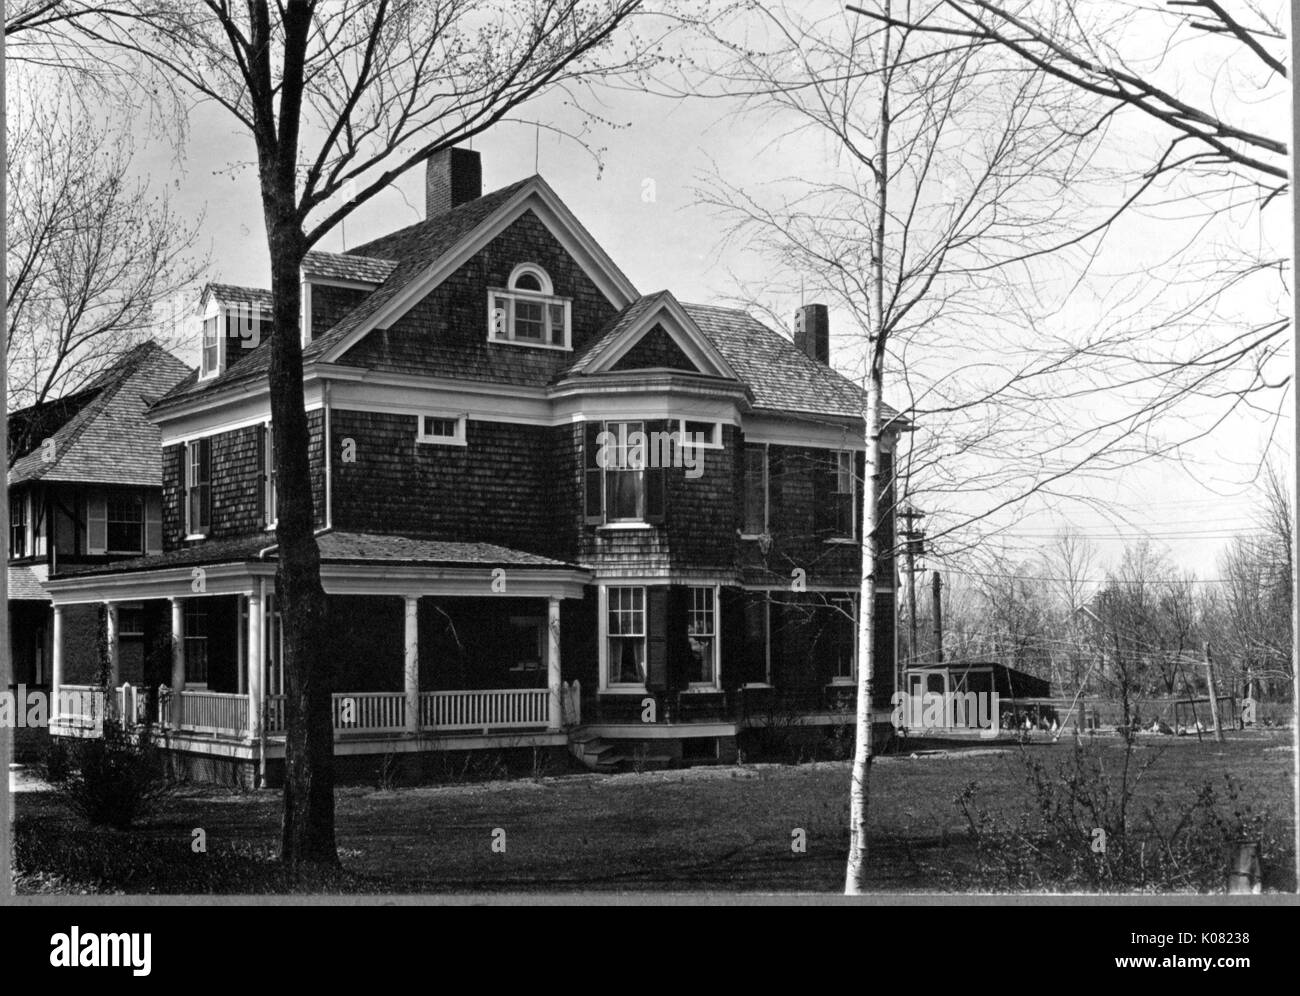 Una gran casa unifamiliar con un gran porche delantero, dormer ventanas, tejas de cedro, chimeneas, y gran jardín con setos de árboles en Baltimore, Maryland, en 1910. Foto de stock